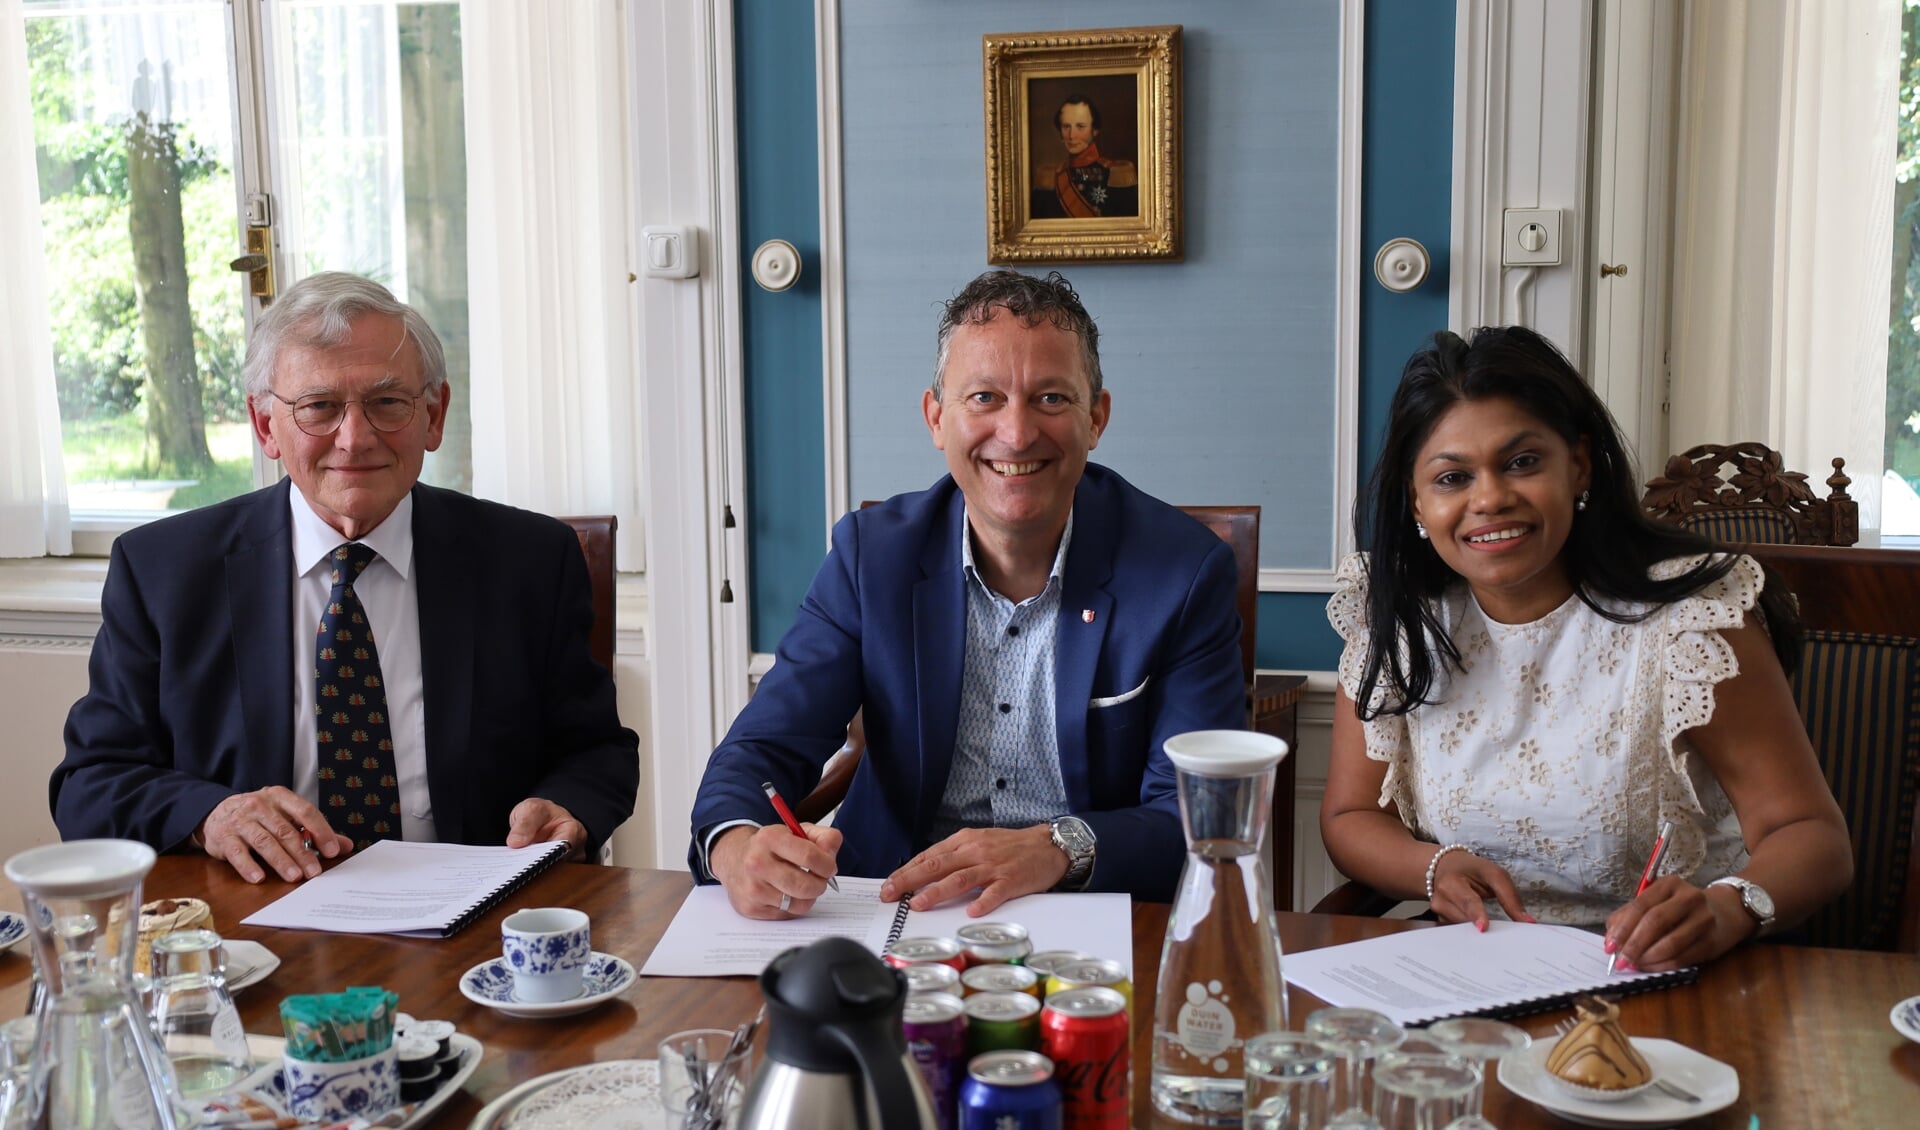 Regiodirecteur Marc Verberg van Leger des Heils W&G Noordwest en de wethouders Ritske Bloemendaal van Wassenaar en Kavita Parbhudayal van Den Haag.